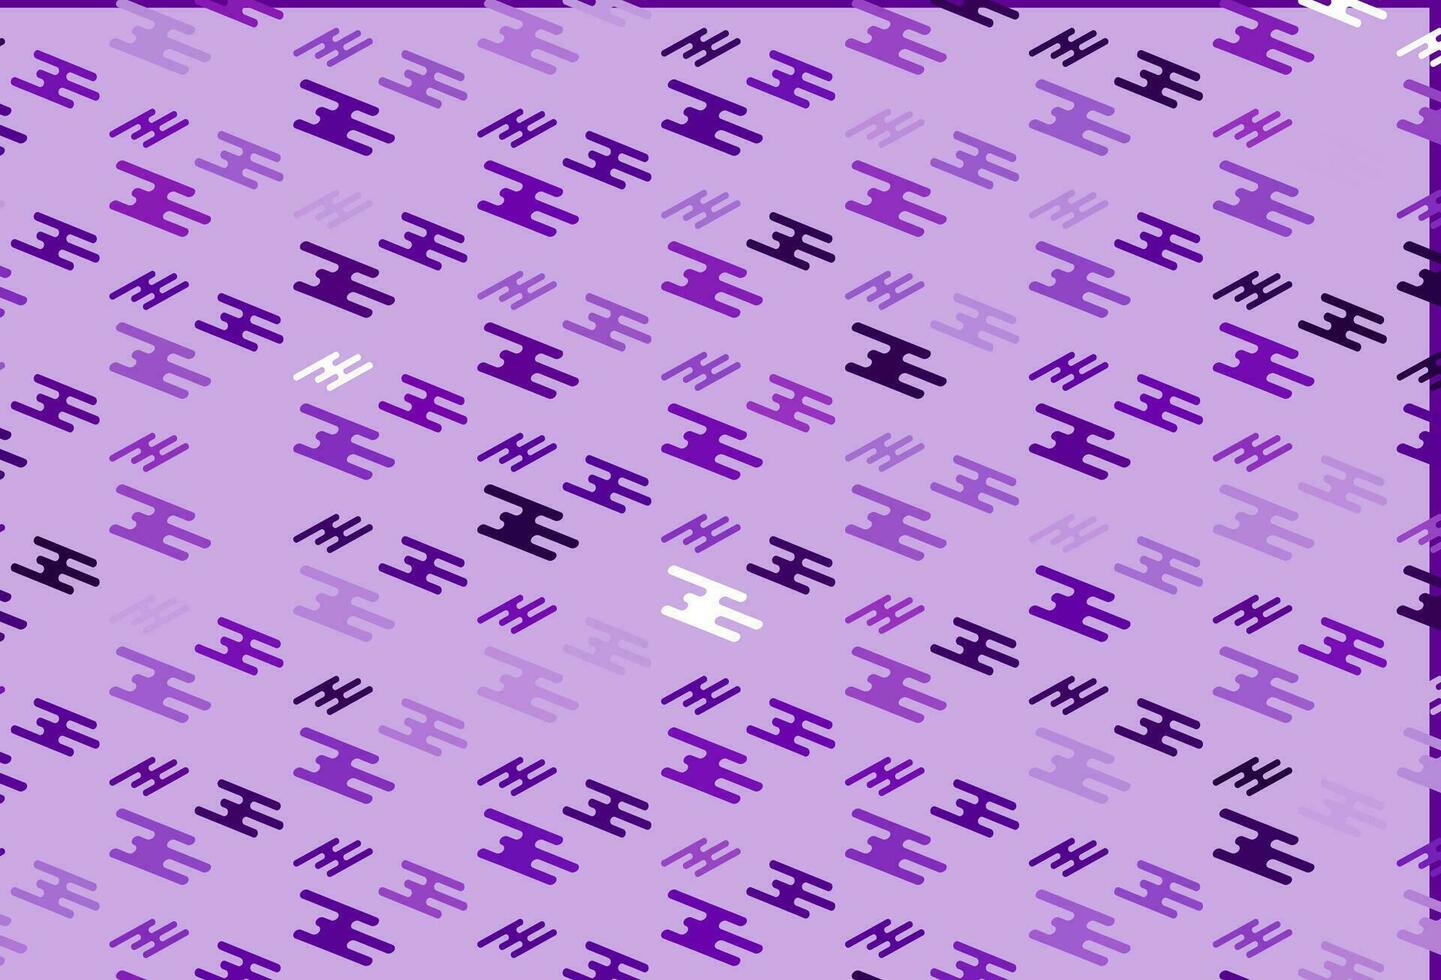 fond de vecteur violet clair avec des lignes droites.